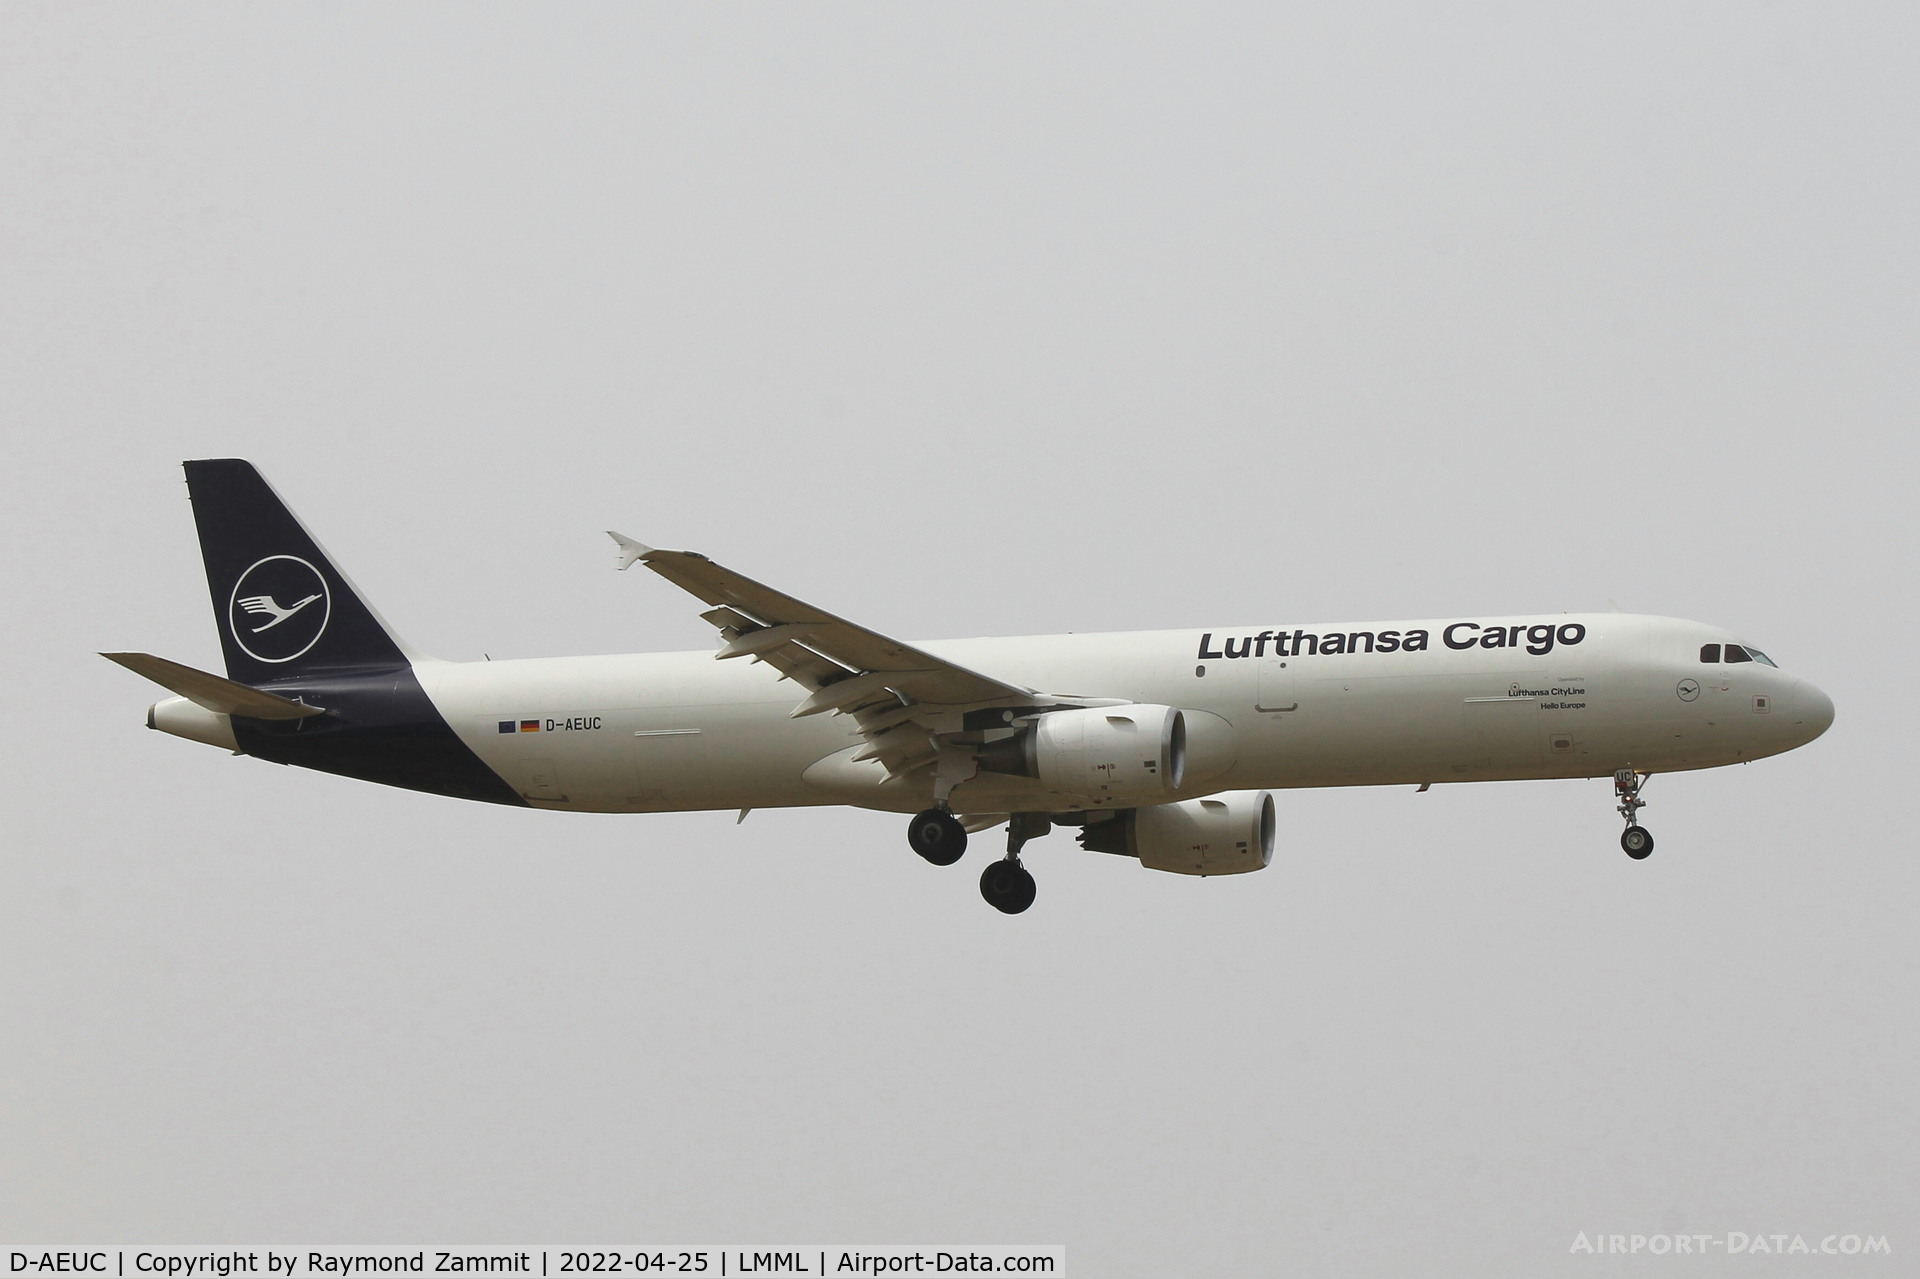 D-AEUC, 2008 Airbus A321-211P2F C/N 3504, A321 D-AEUC Lufthansa Cargo